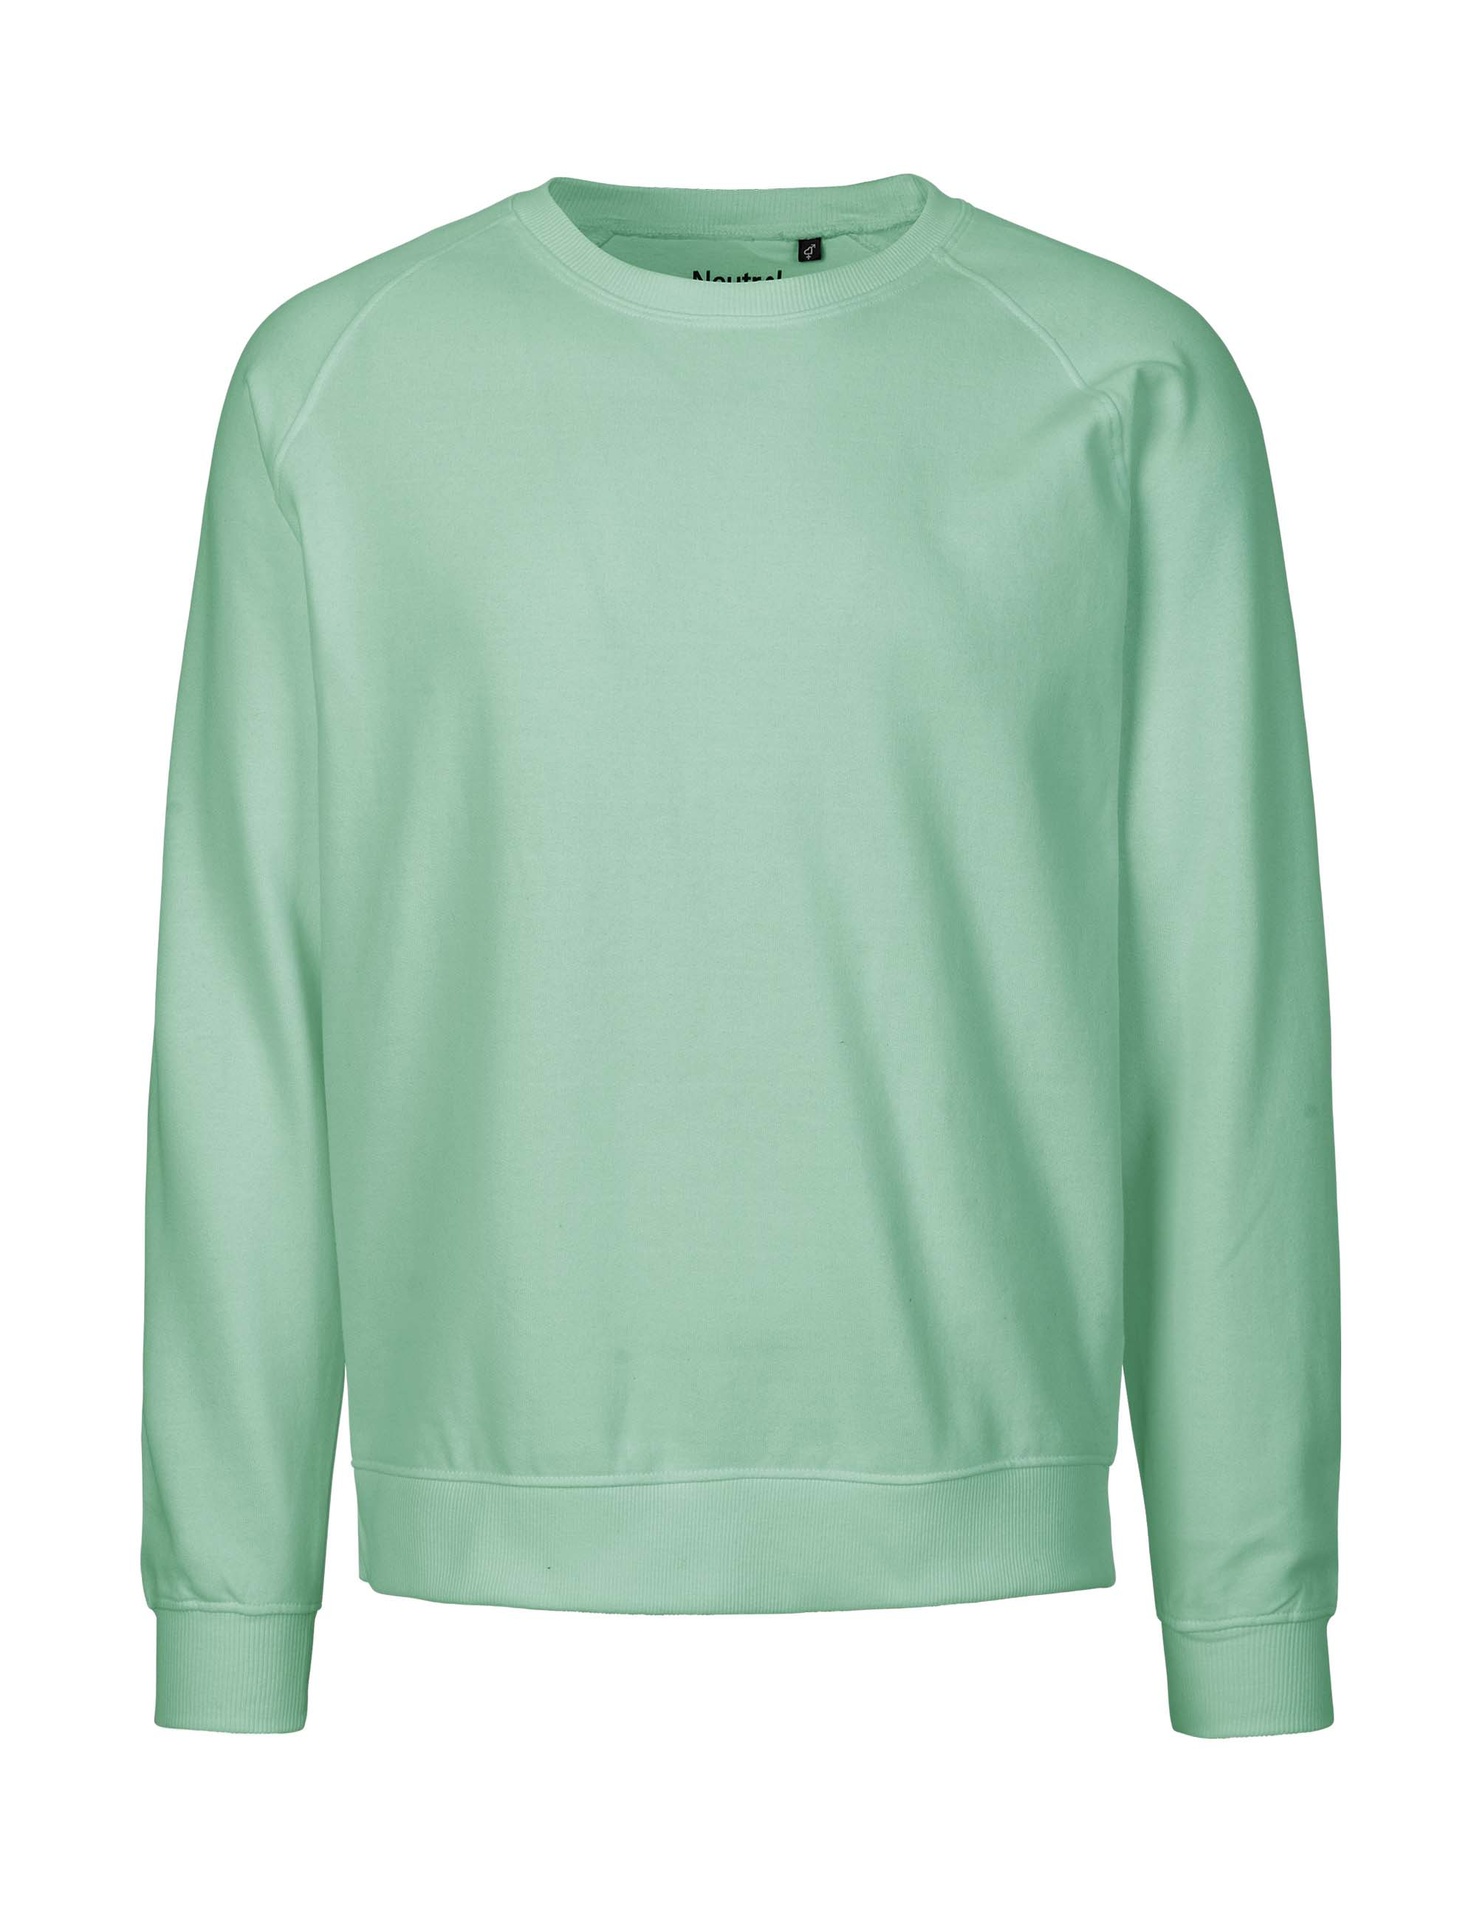 [PR/02829] Unisex Sweatshirt (Dusty Mint 40, 3XL)